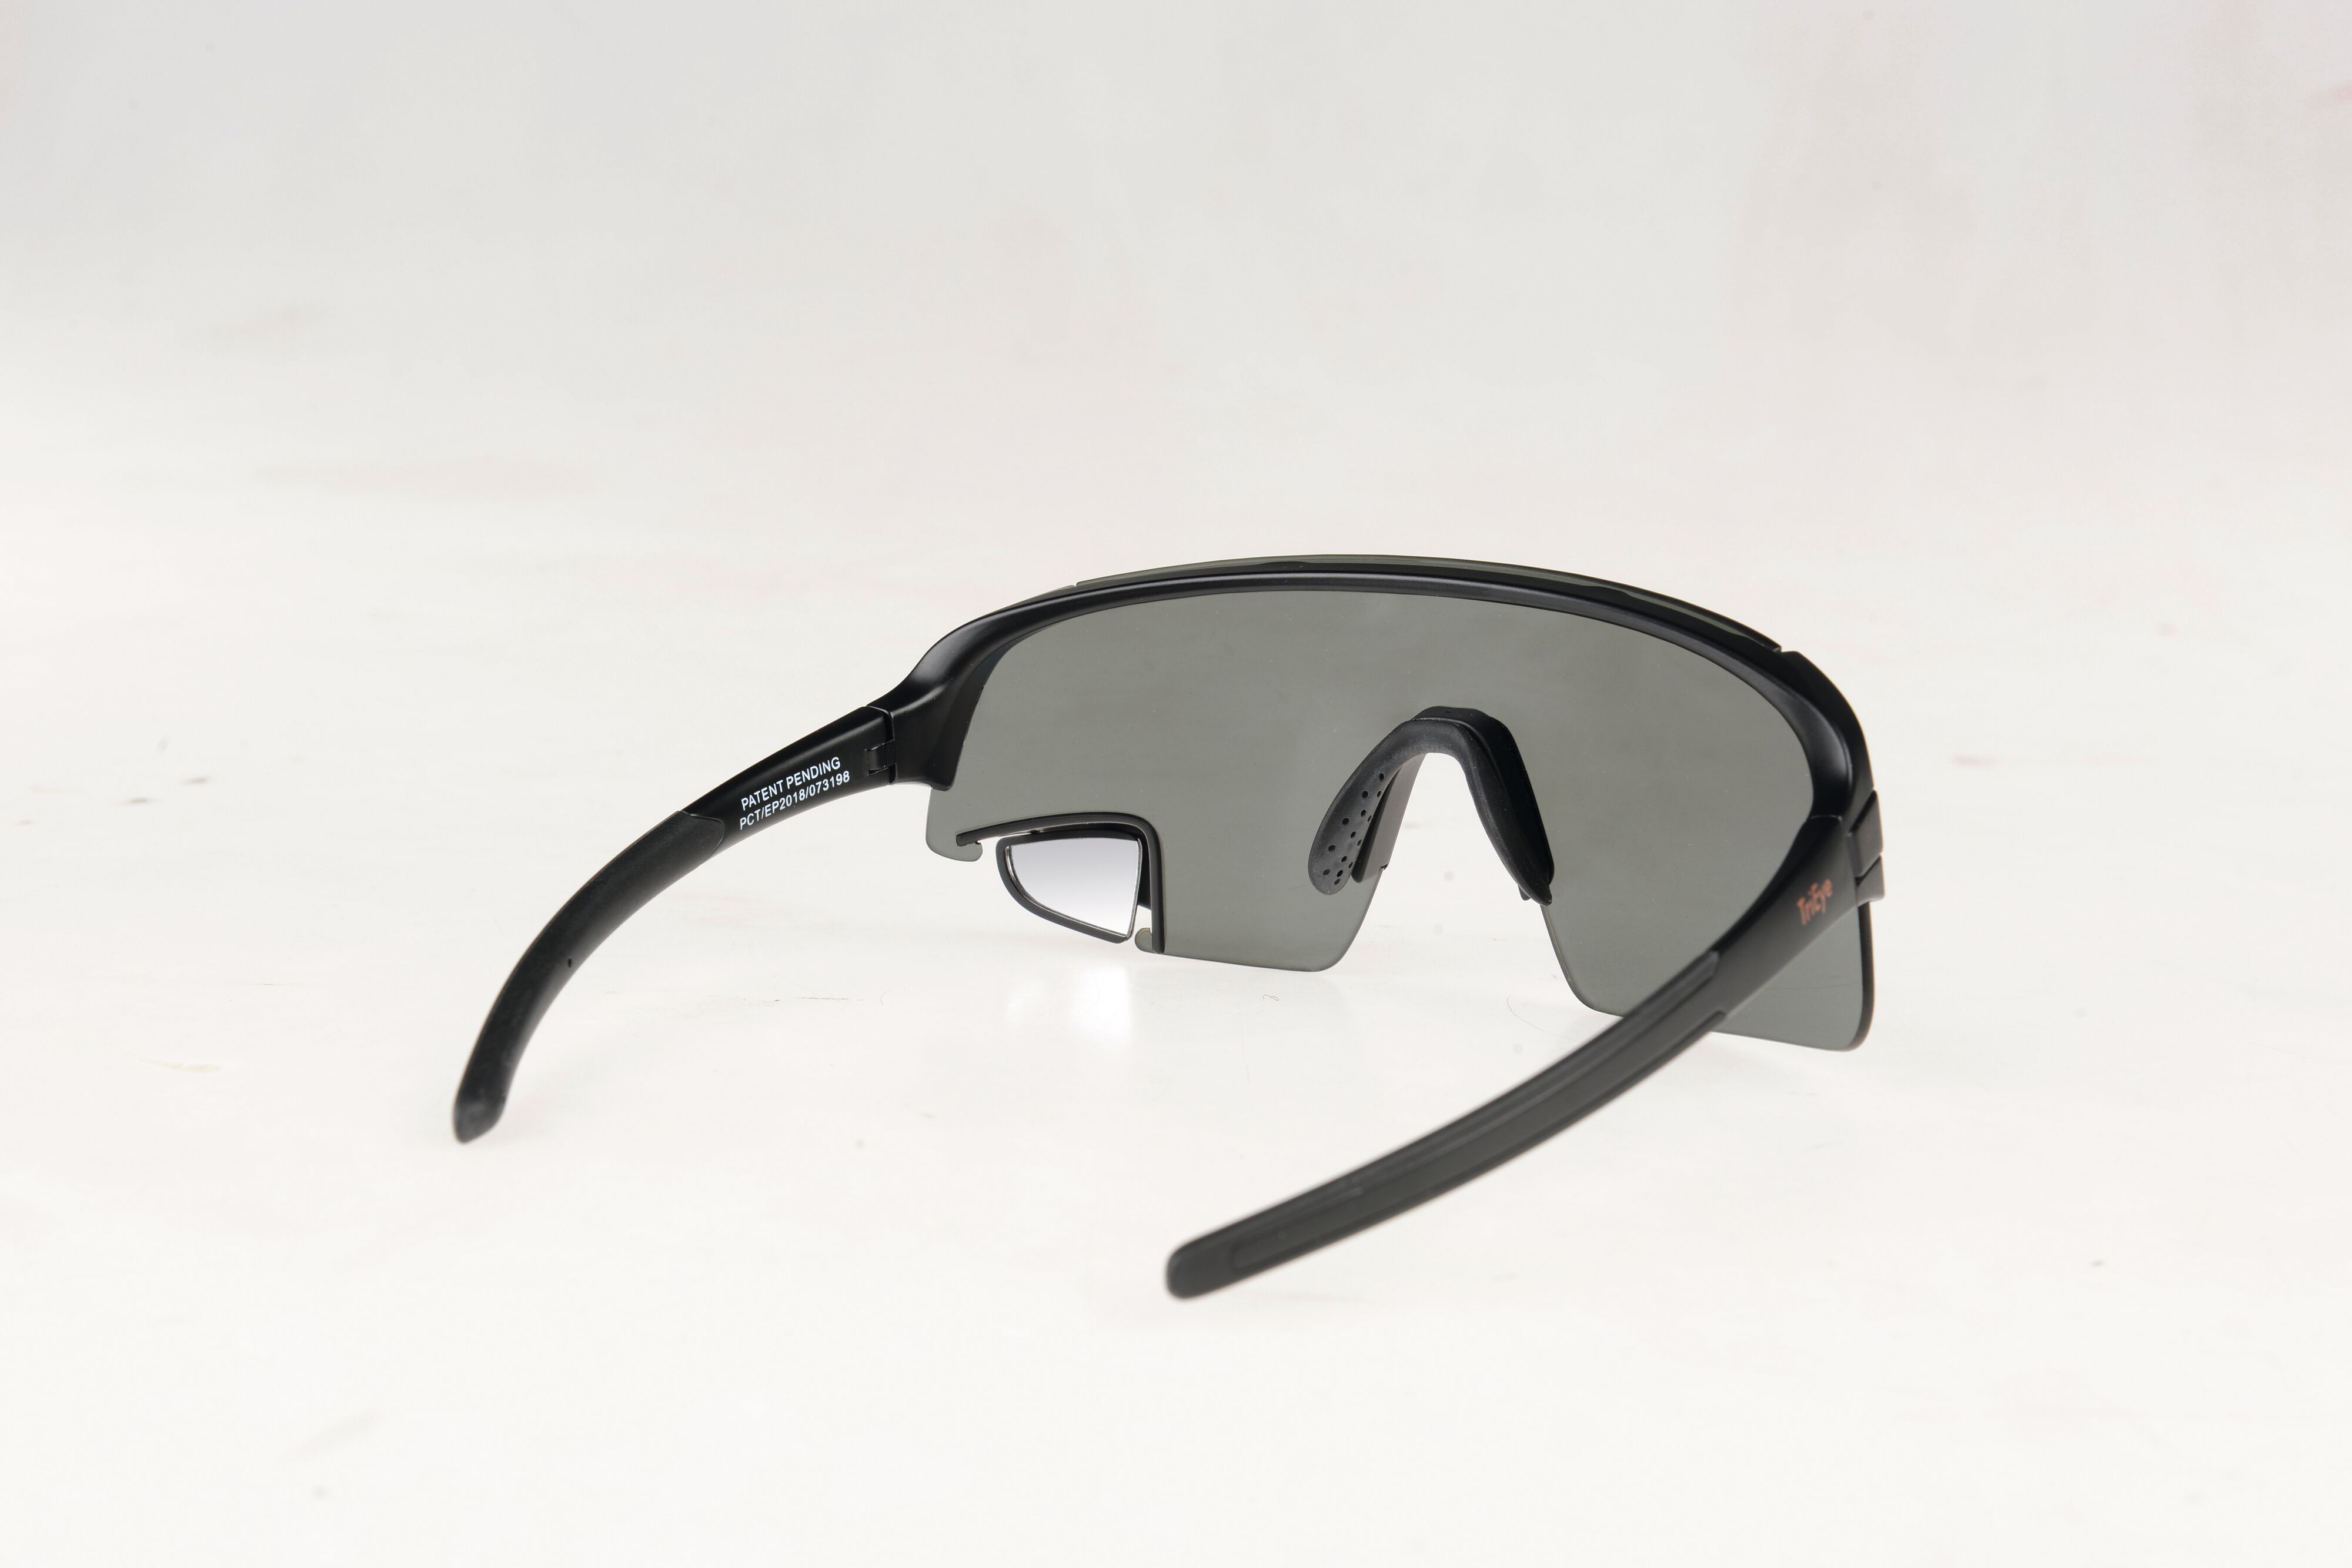 Radbrille von TriEye: Die Spiegel-Sportbrille im TOUR-Test